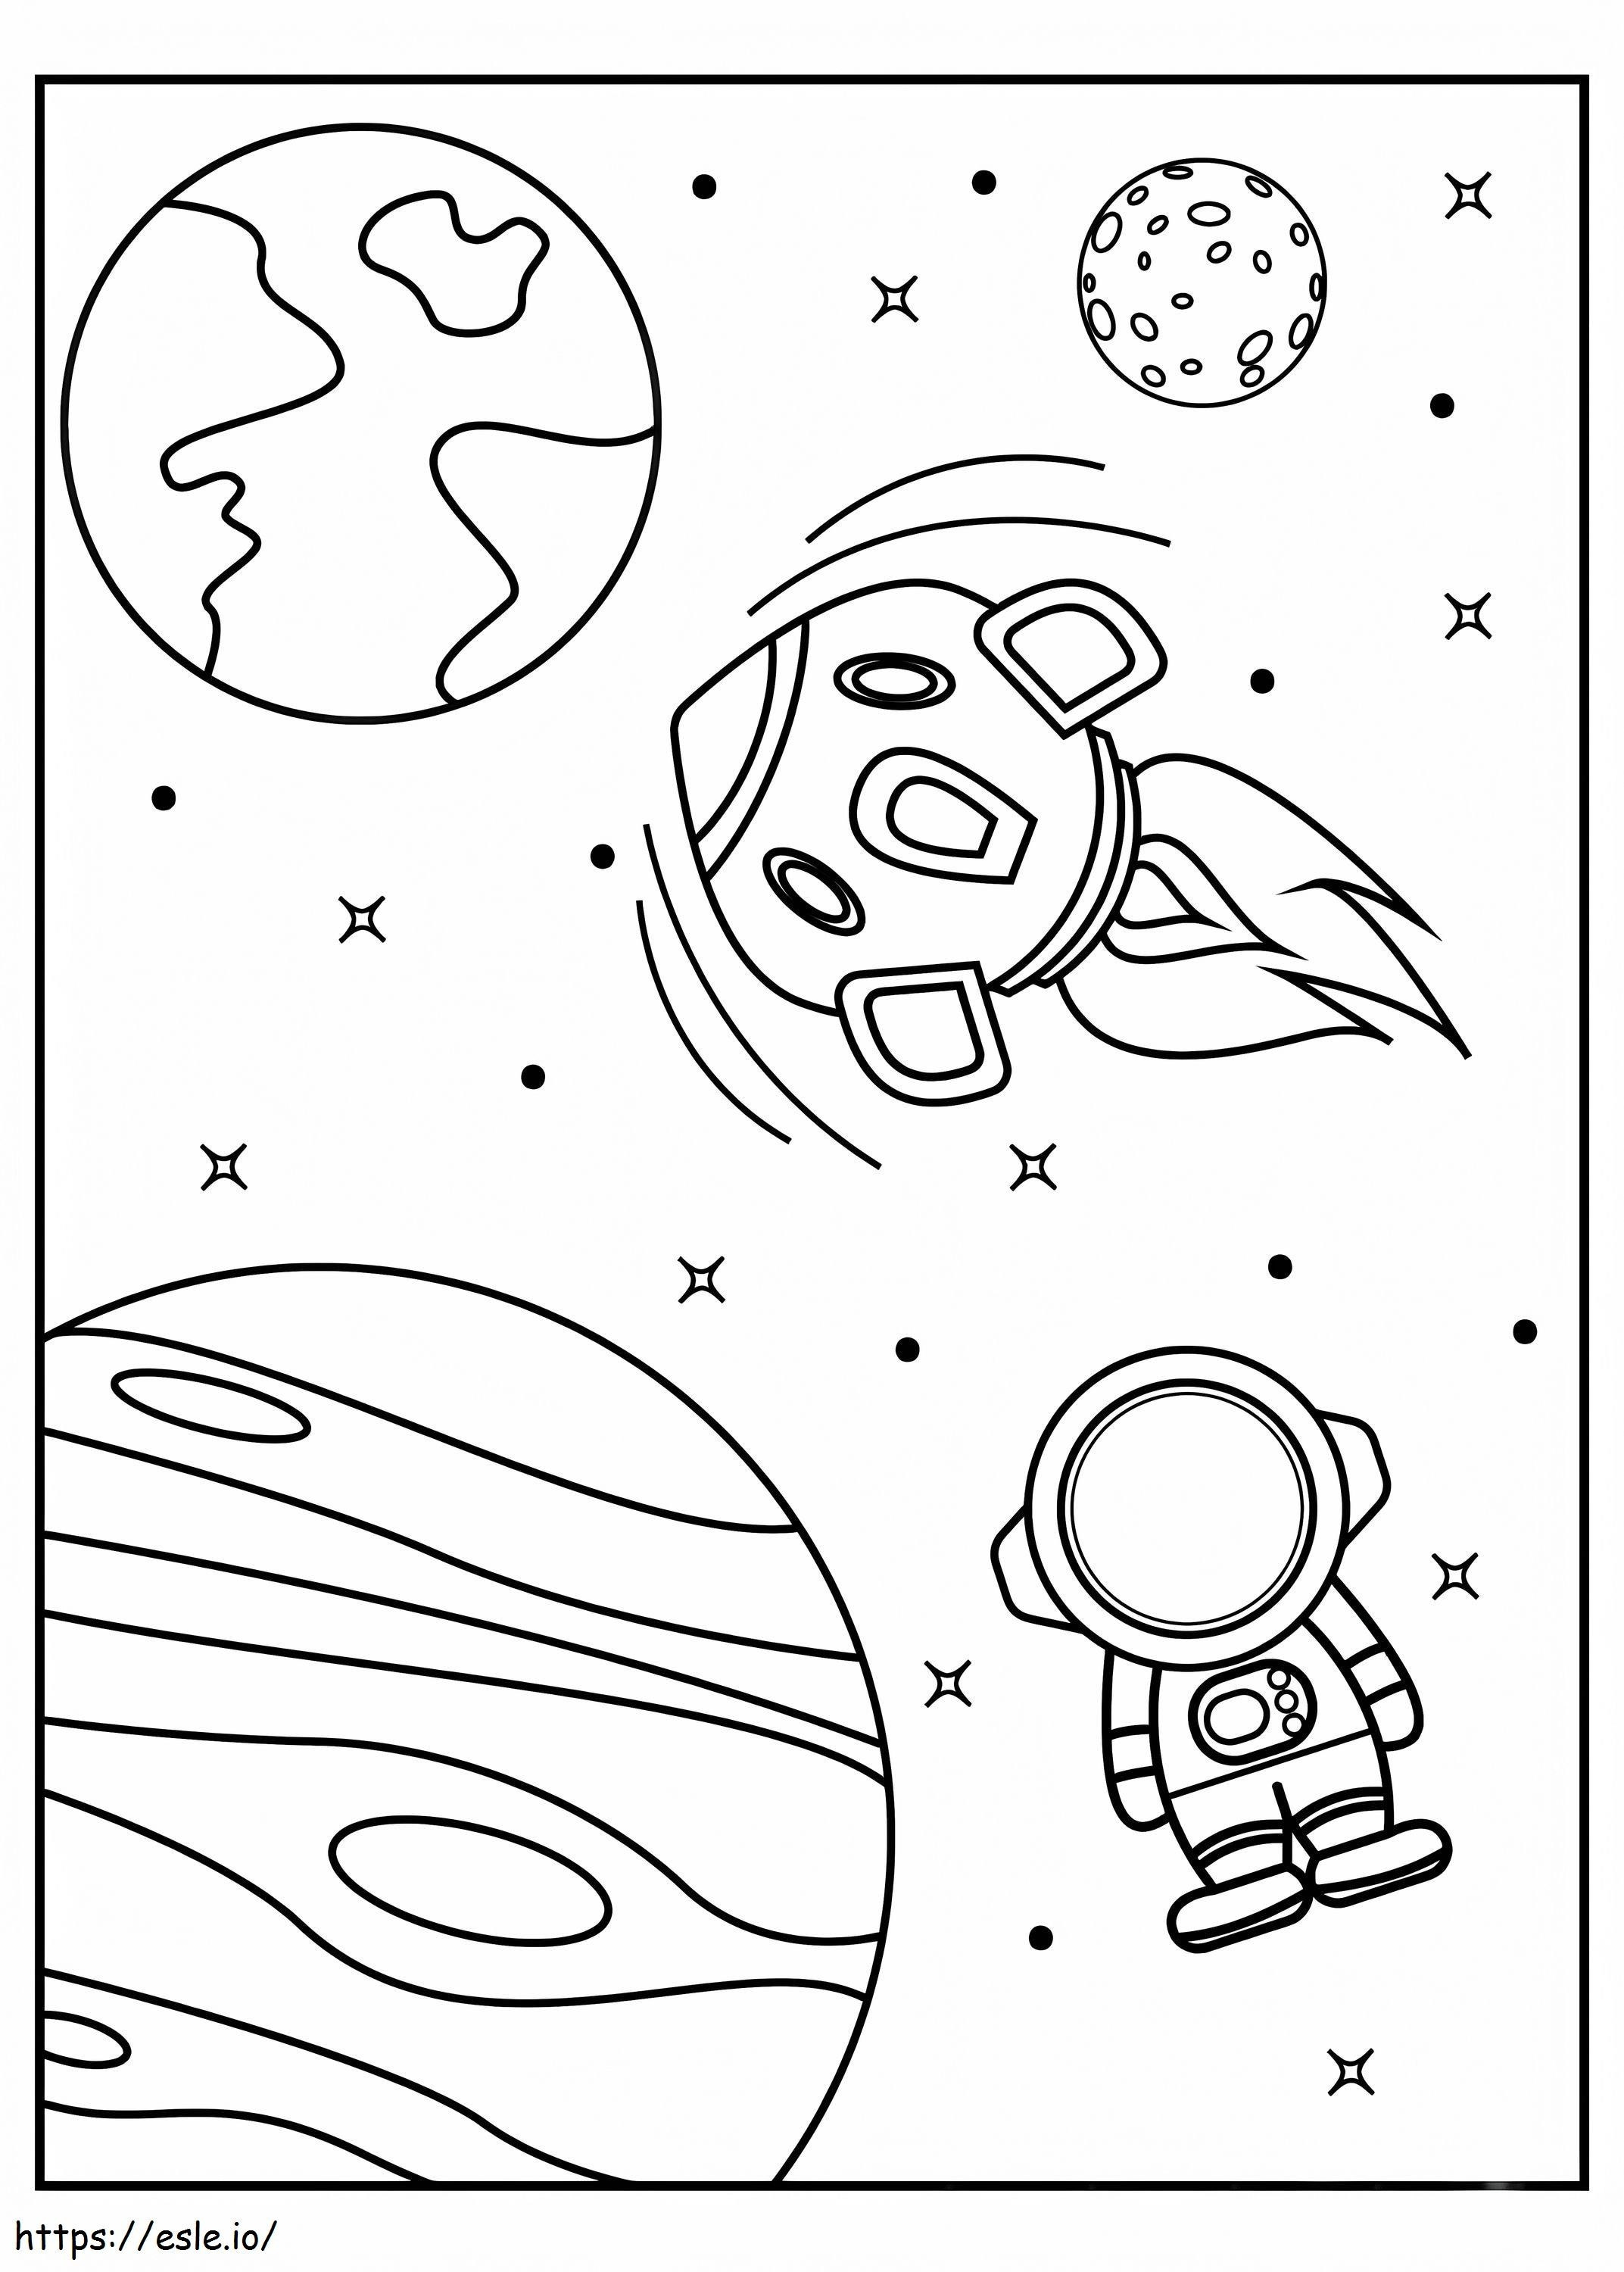 Foguete e astronauta do espaço sideral para colorir